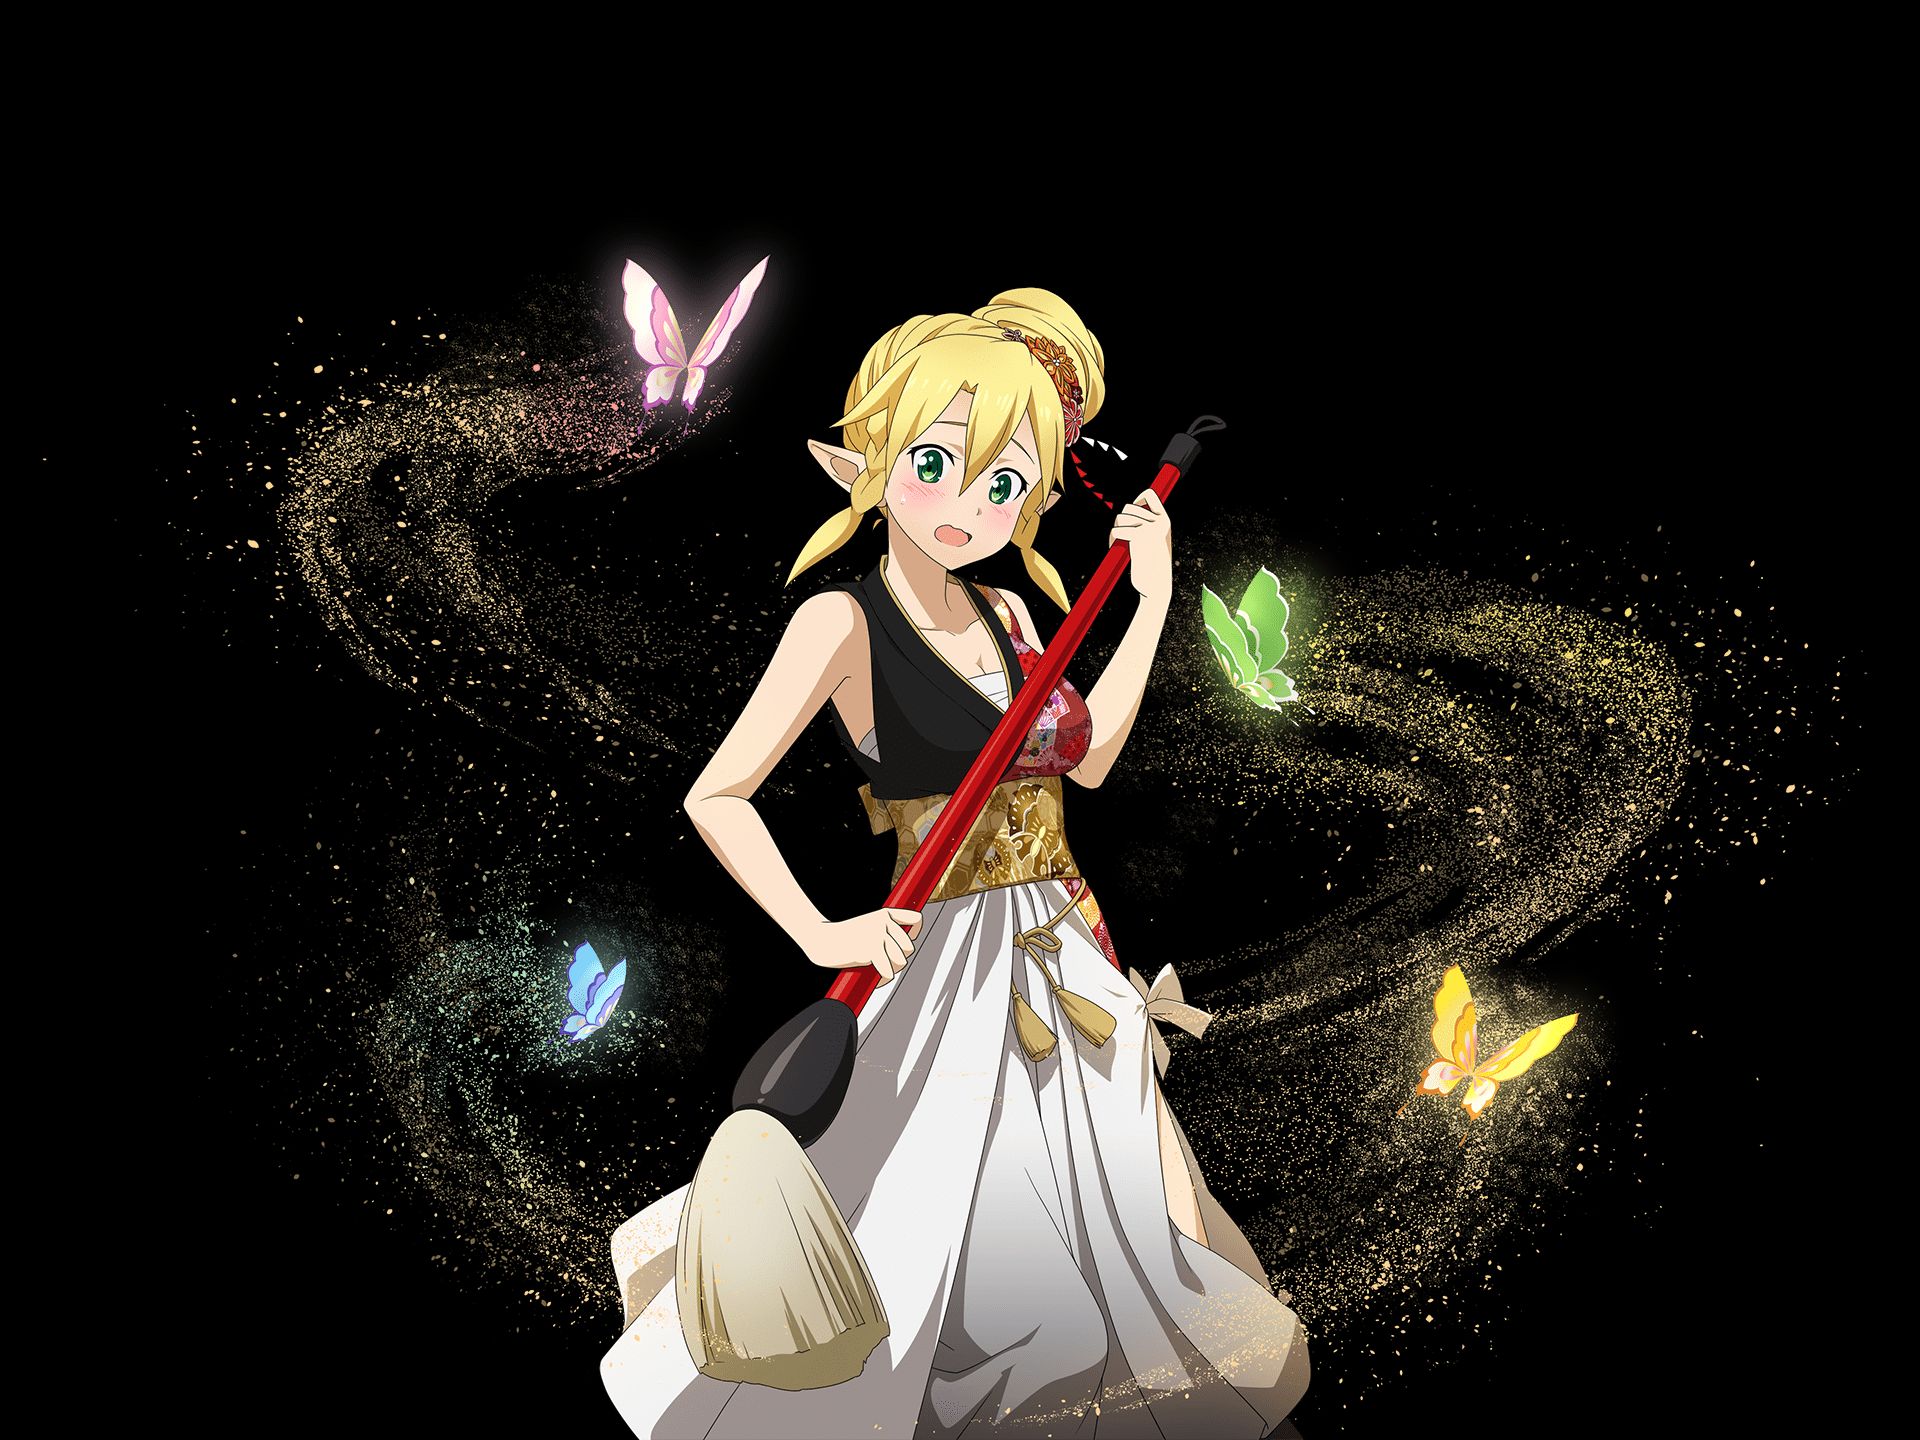 Descarga gratuita de fondo de pantalla para móvil de Sword Art Online, Animado, Suguha Kirigaya, Leafa (Arte De Espada En Línea), Sword Art Online: Alicización.